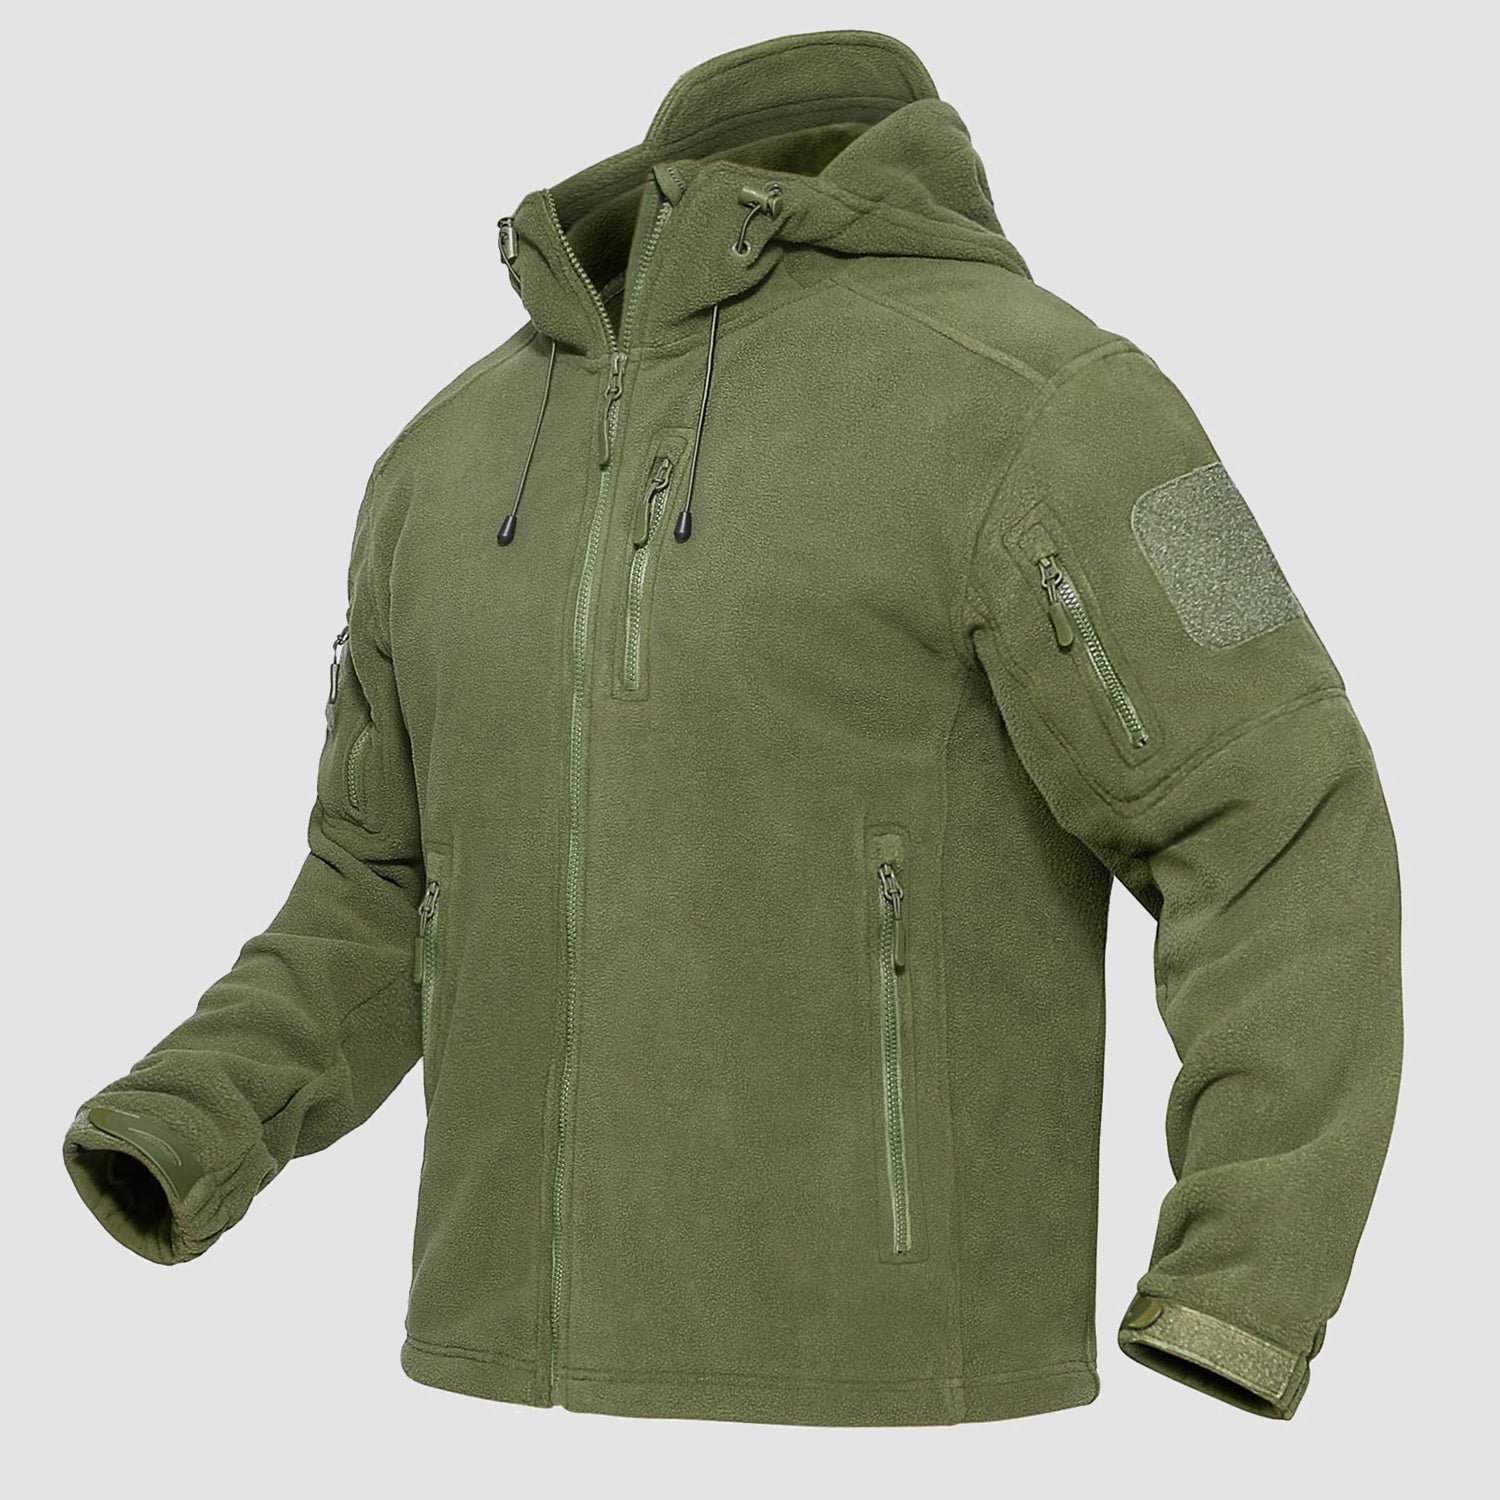 https://magcomsen.com/cdn/shop/products/Men_s-Fleece-Hoodie-Jacket-5-Zip-Pockets-Military-Tactical-Coat-Windproof-Winter-Full-Zip-Hiking-Work-Outwear1_4.jpg?v=1672124591&width=1500